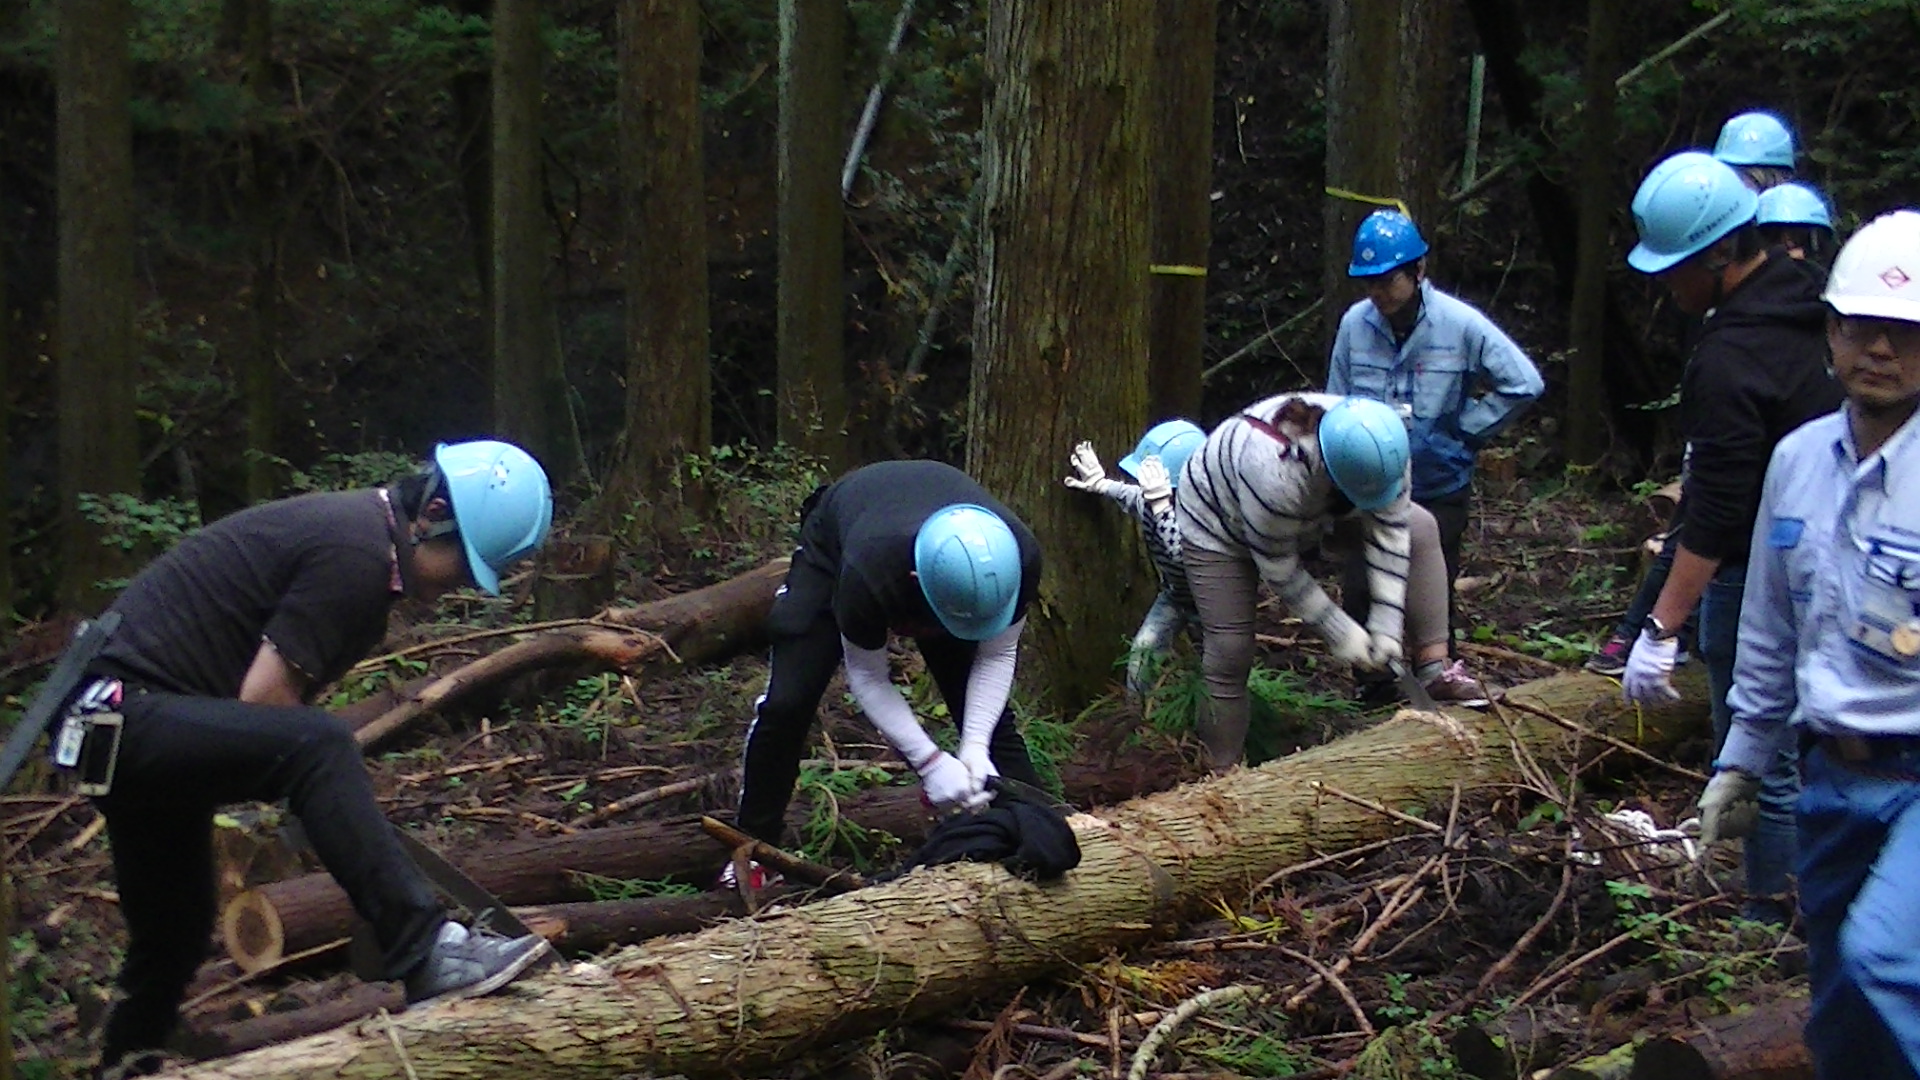 【環境貢献活動】道志村水源林間伐ボランティアに参加しました